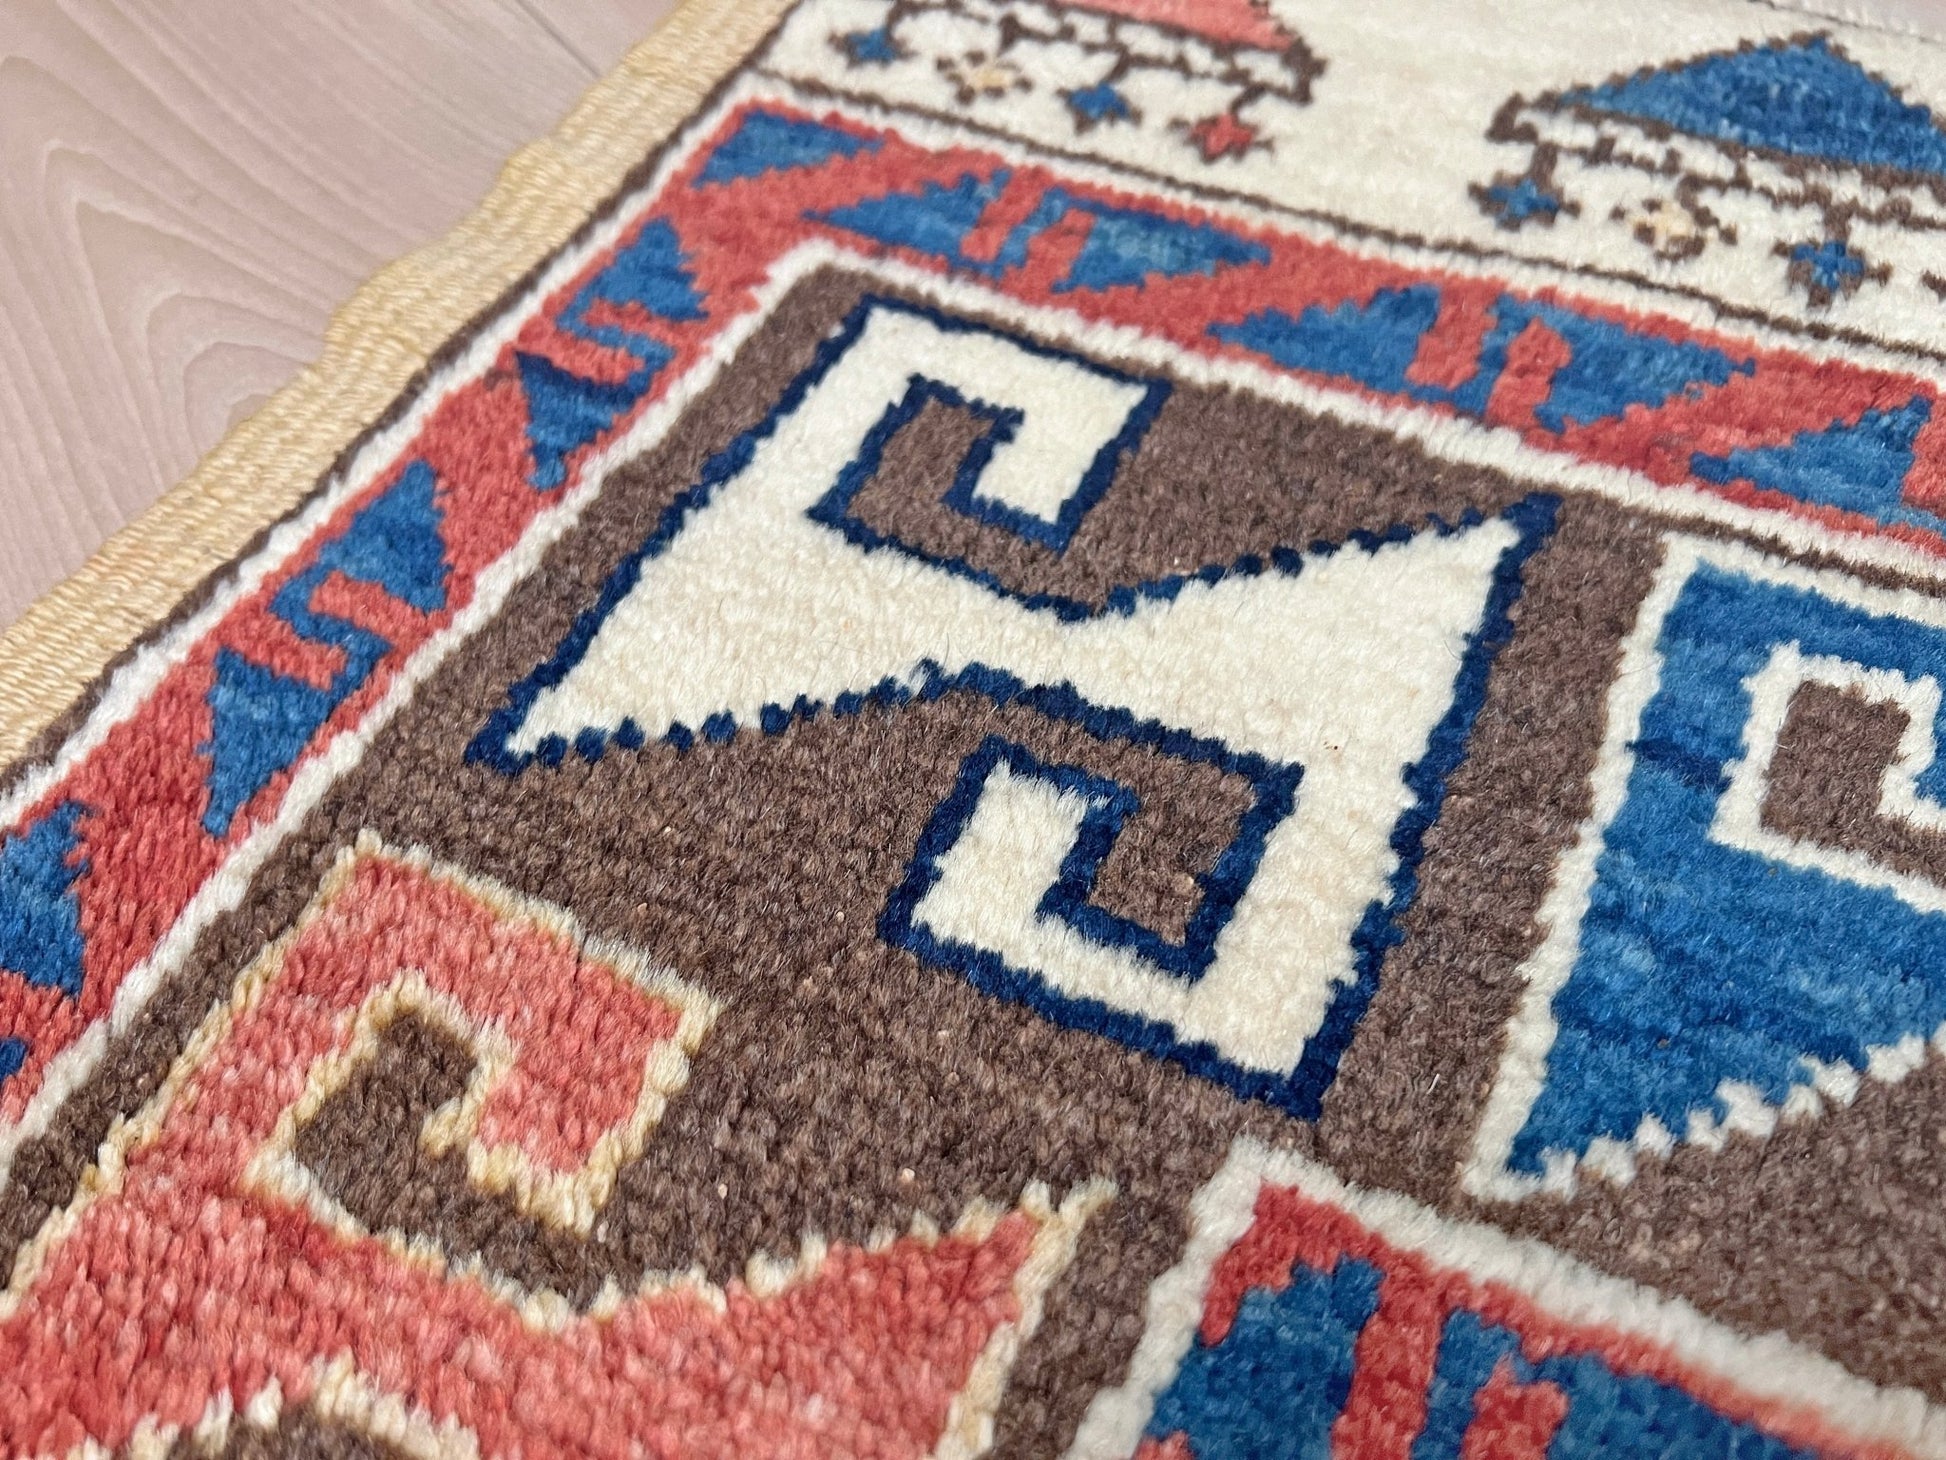 Konya handmade Turkish wool handmade Mini Rug rug shop san francisco bay area. Buy rug online free shipping USA Canada.